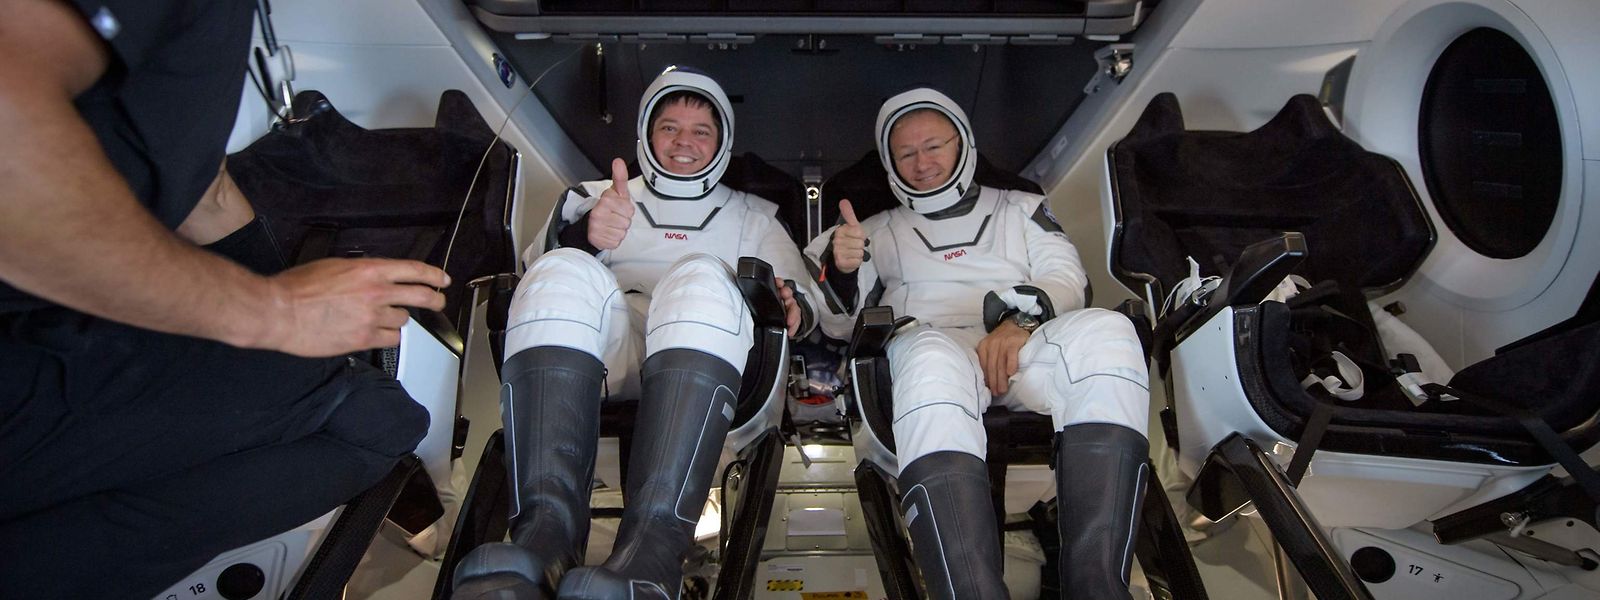 Le dernier coup d'éclat de SpaceX a consisté, fin juillet, à expédier deux astronautes de la NASA vers l'ISS.